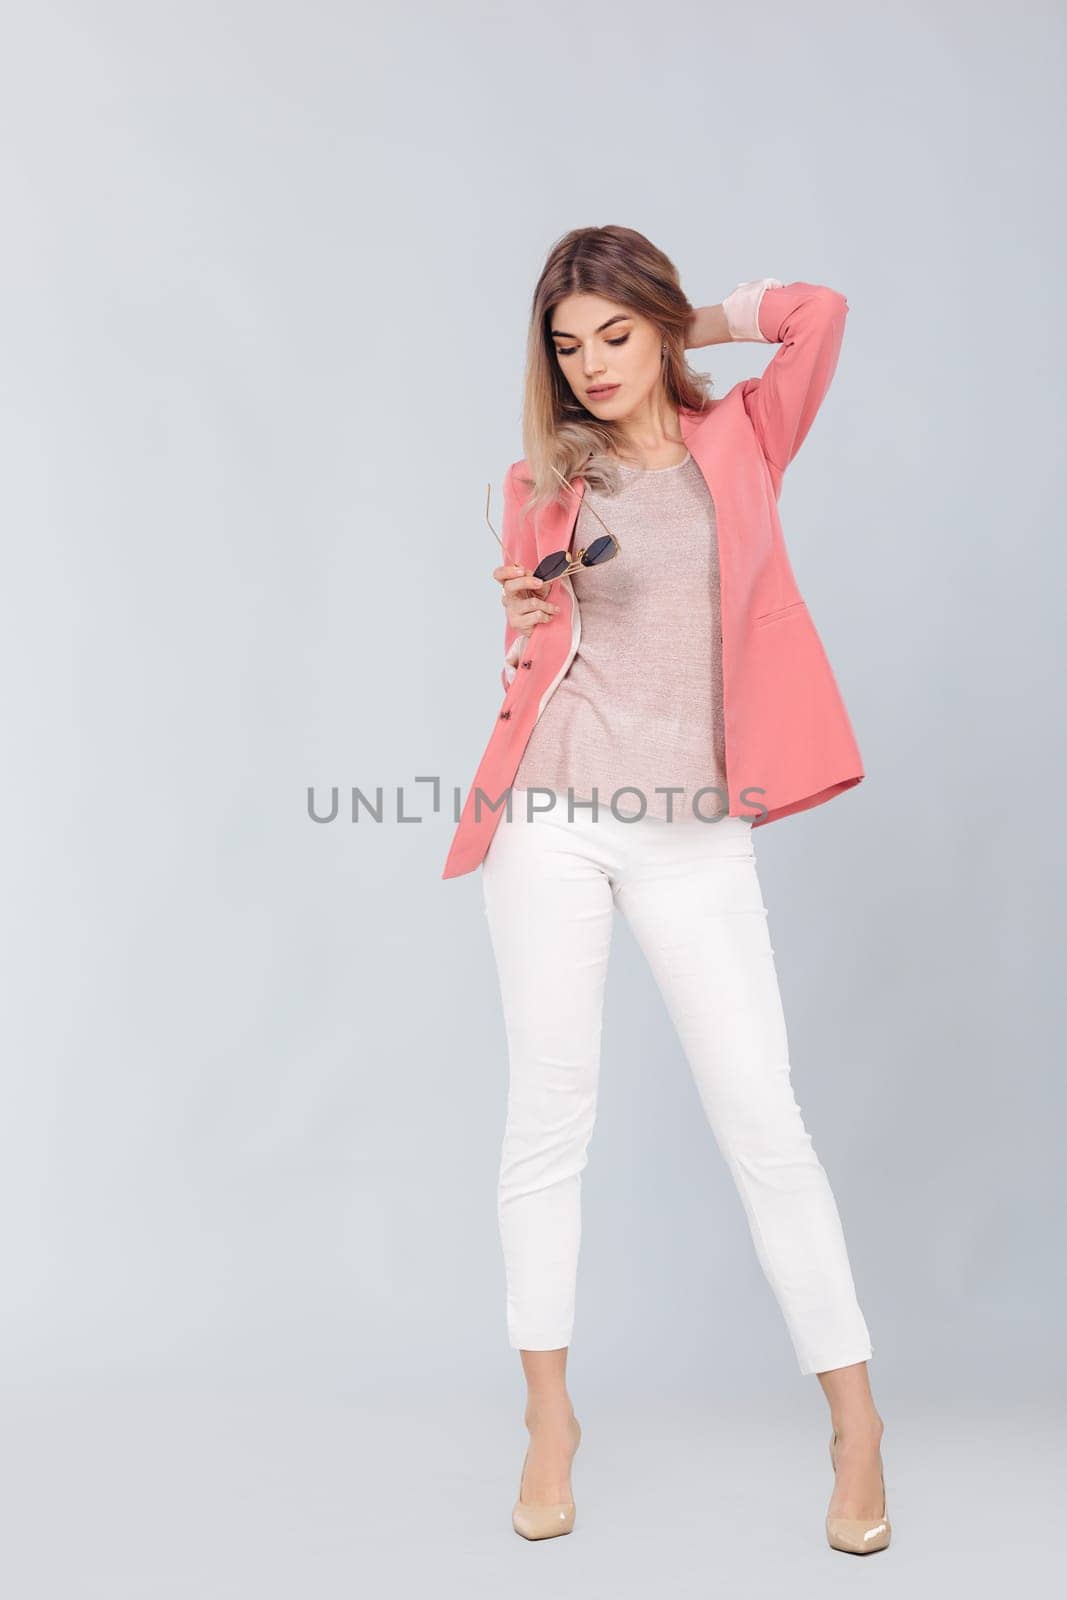 blonde woman in pastel casual jacket posing in studio. by erstudio